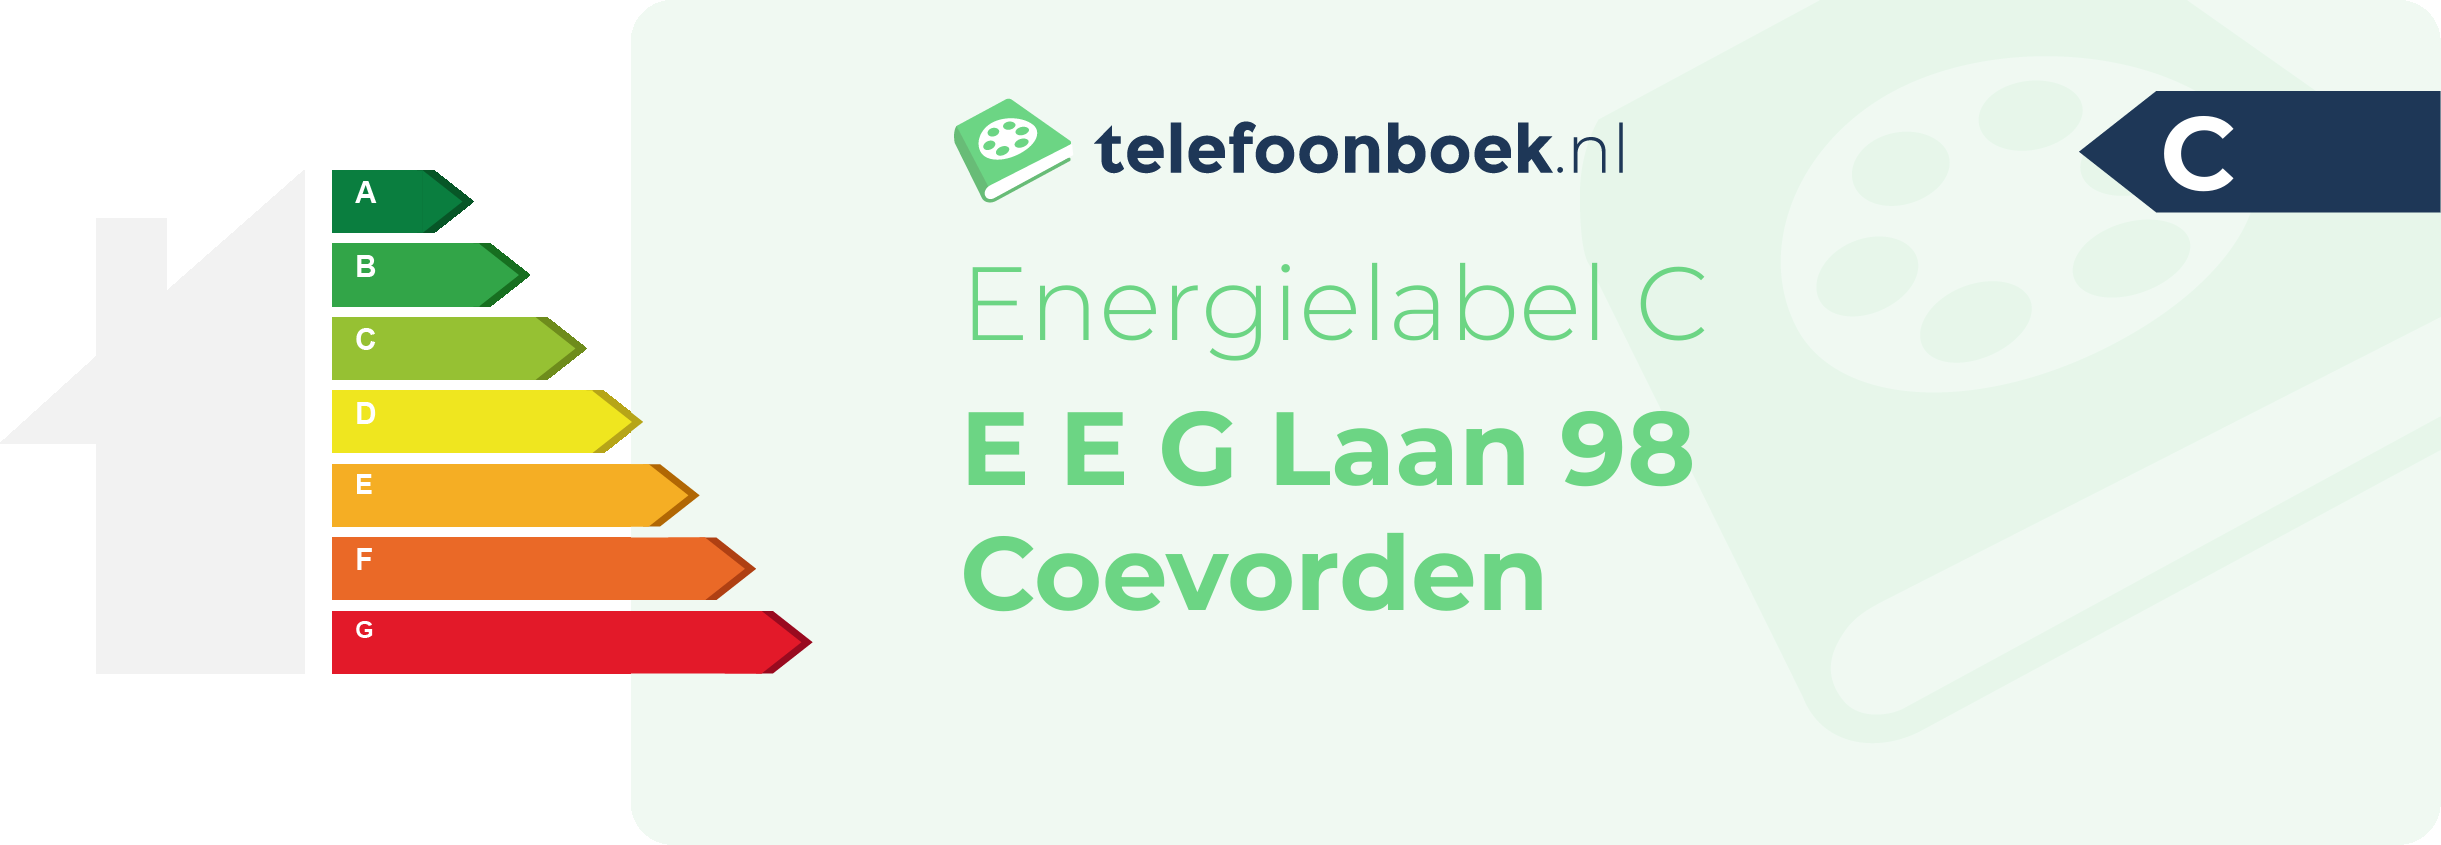 Energielabel E E G Laan 98 Coevorden